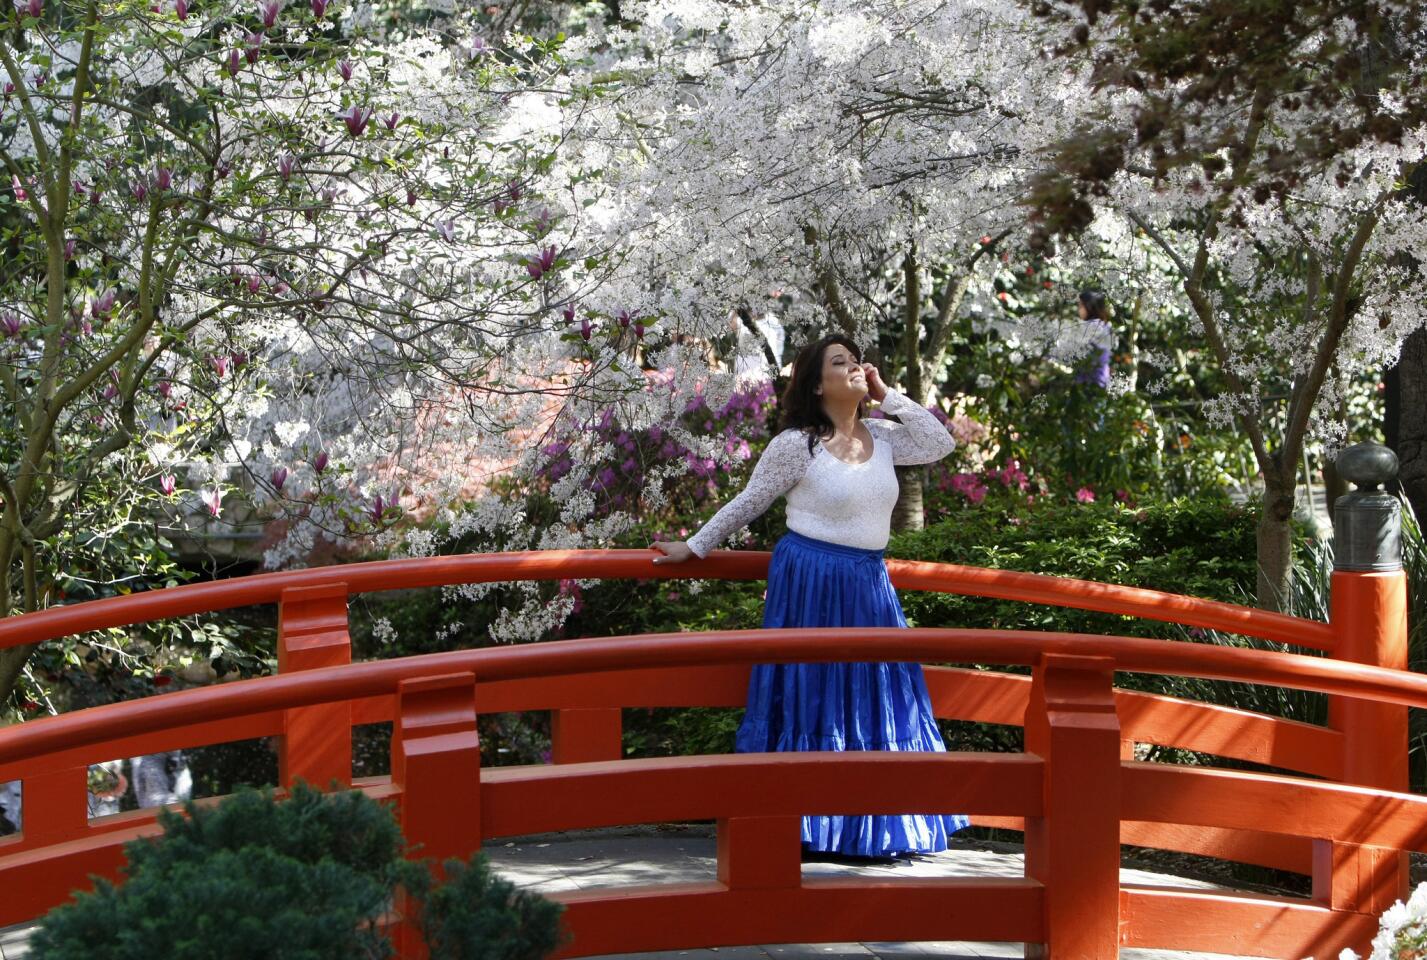 Olivia Baralla, 52 of Santa Clarita, poses for some photos on the Japanese Garden bridge at Descanso Gardens in La Cañada Flintridge on Friday, March 24, 2017.